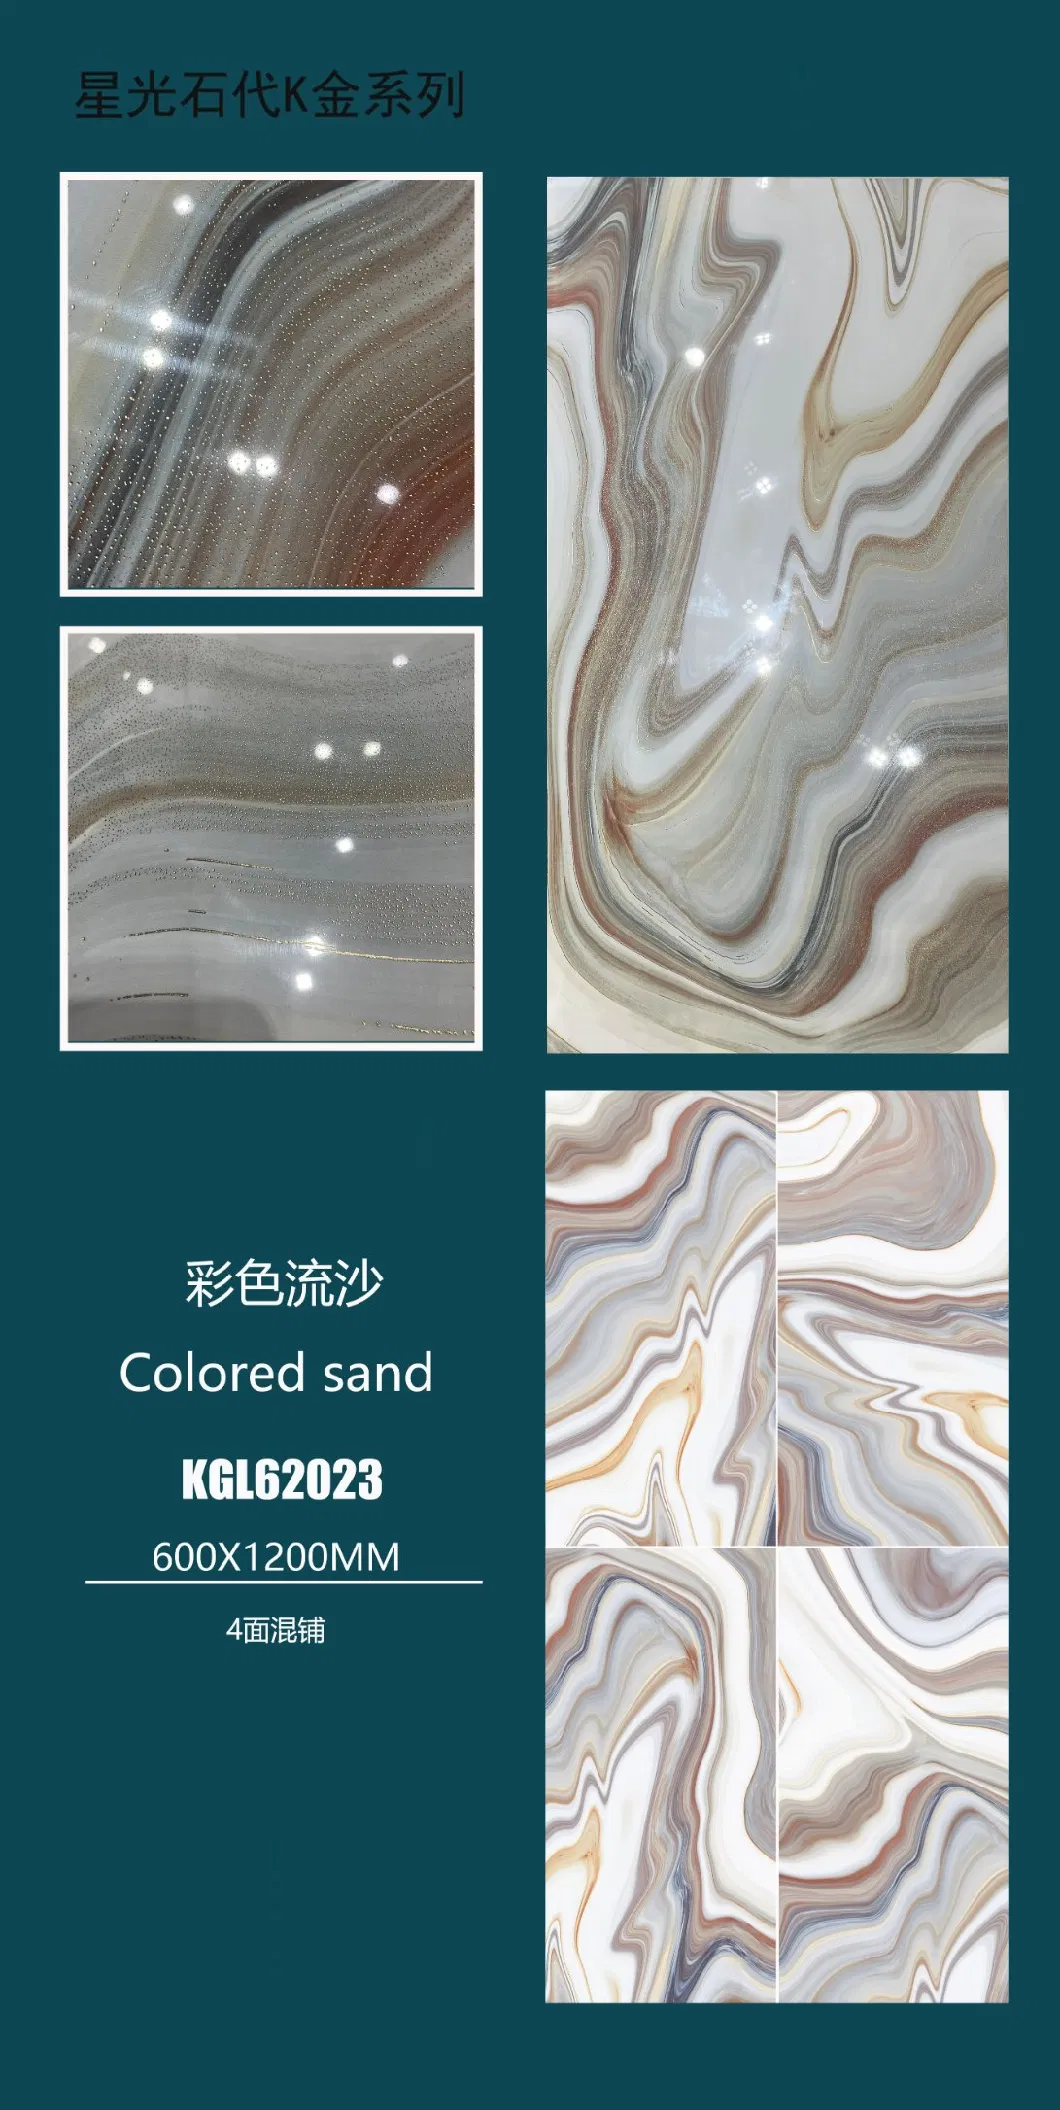 Foshan Modern 600 X 1200mm Full Body K Line Vitrified Golden Silver Polished Glazed Porcelain Ceramic Wall Floor Tiles